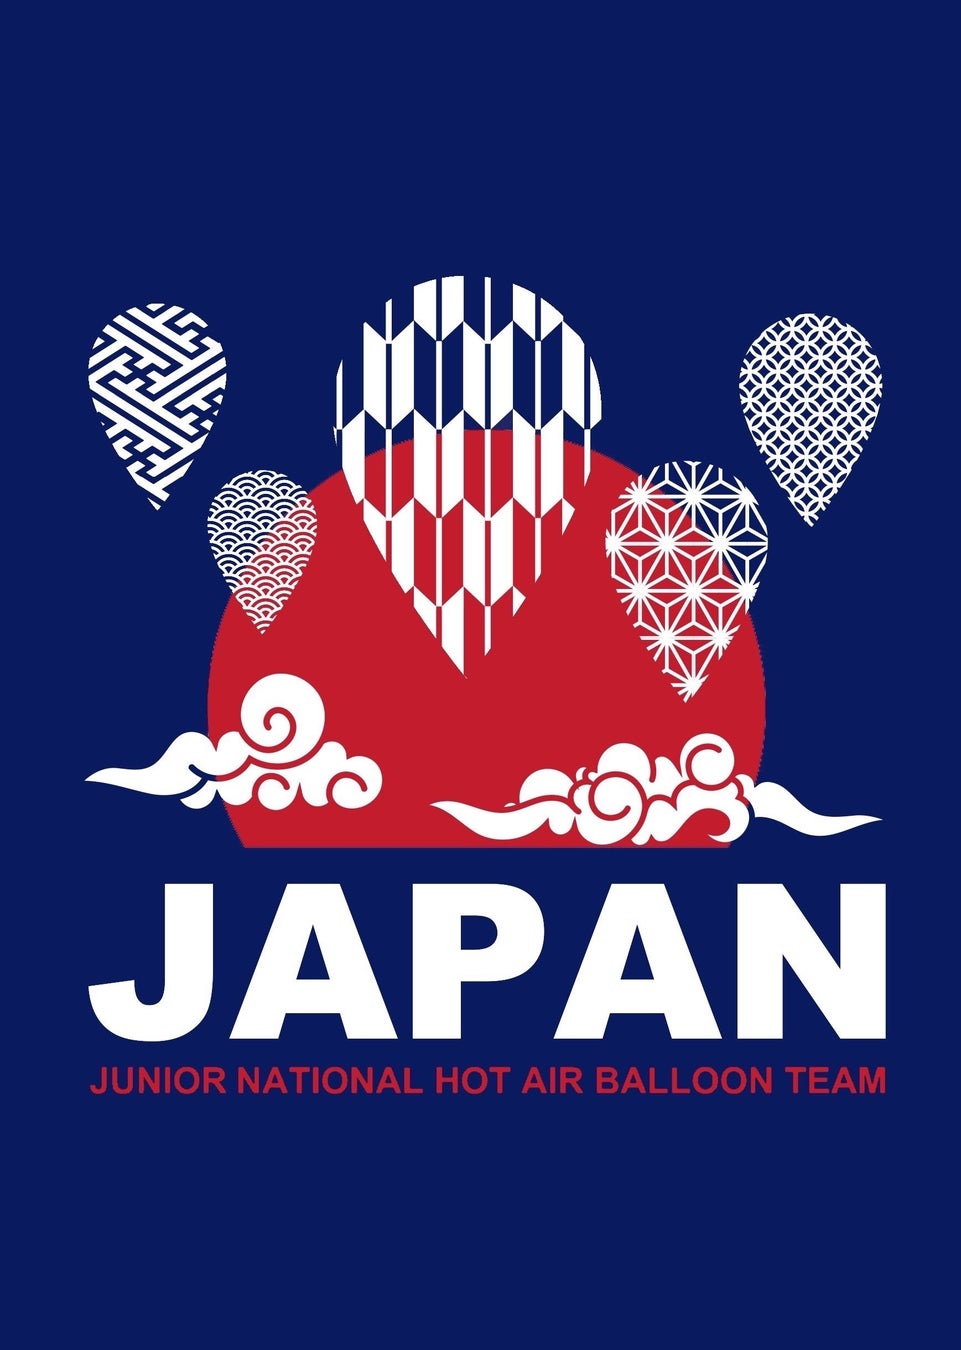 ガスパル九州が「FAI第６回熱気球ジュニア世界選手権」日本代表選手団に協賛しました。